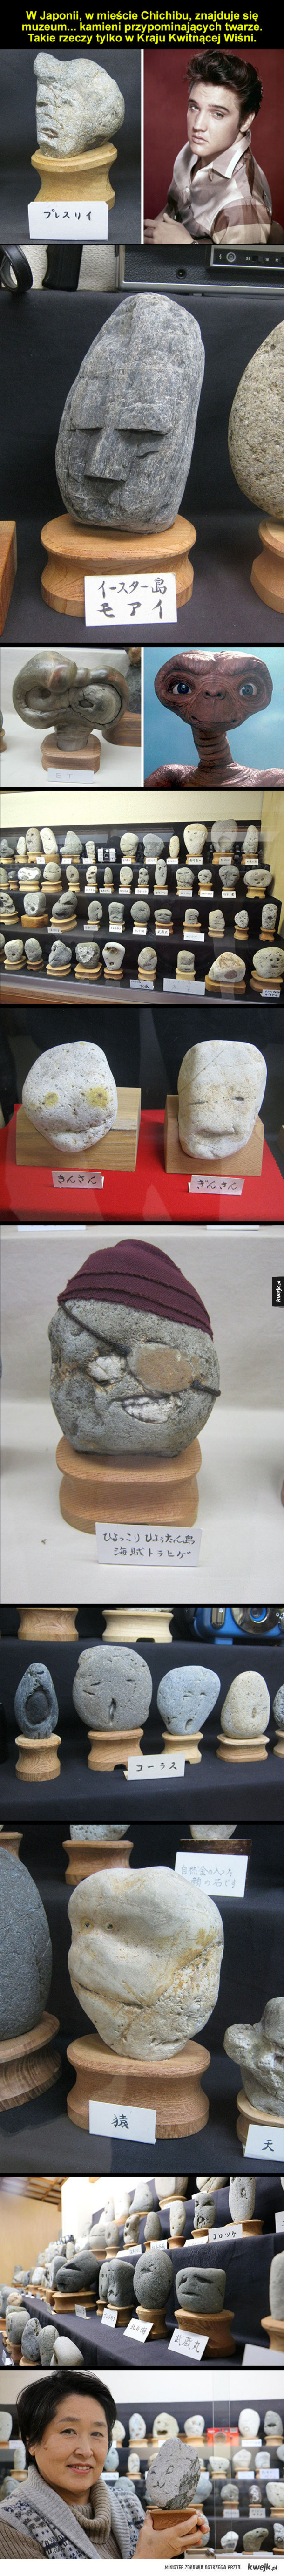 Muzeum kamieni w Japonii